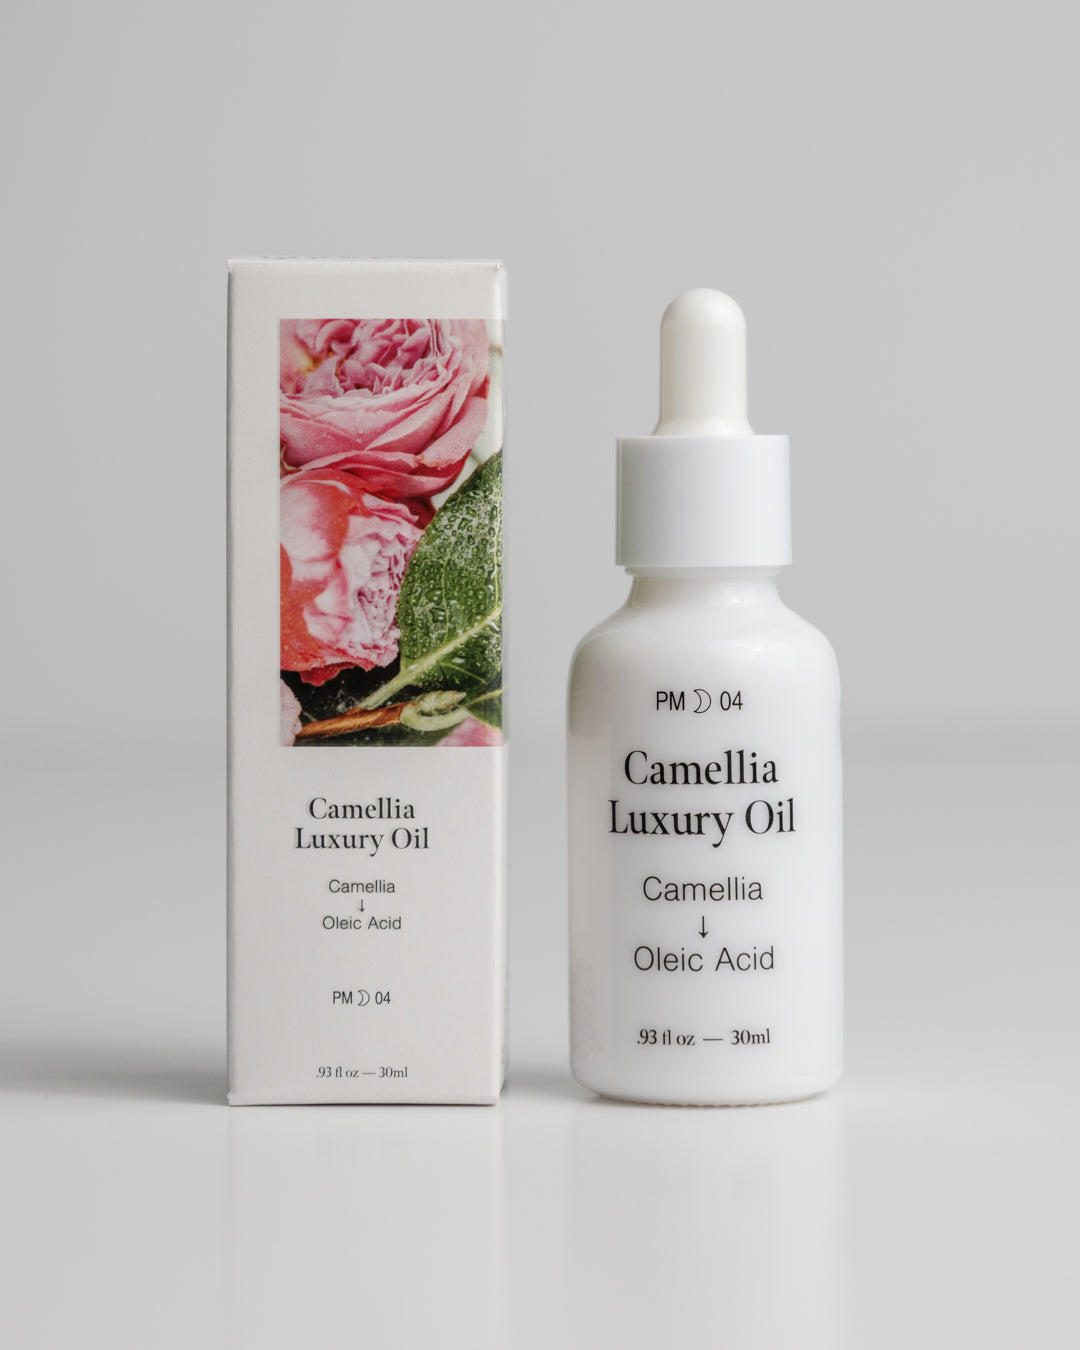 Camellia Luxury Oil